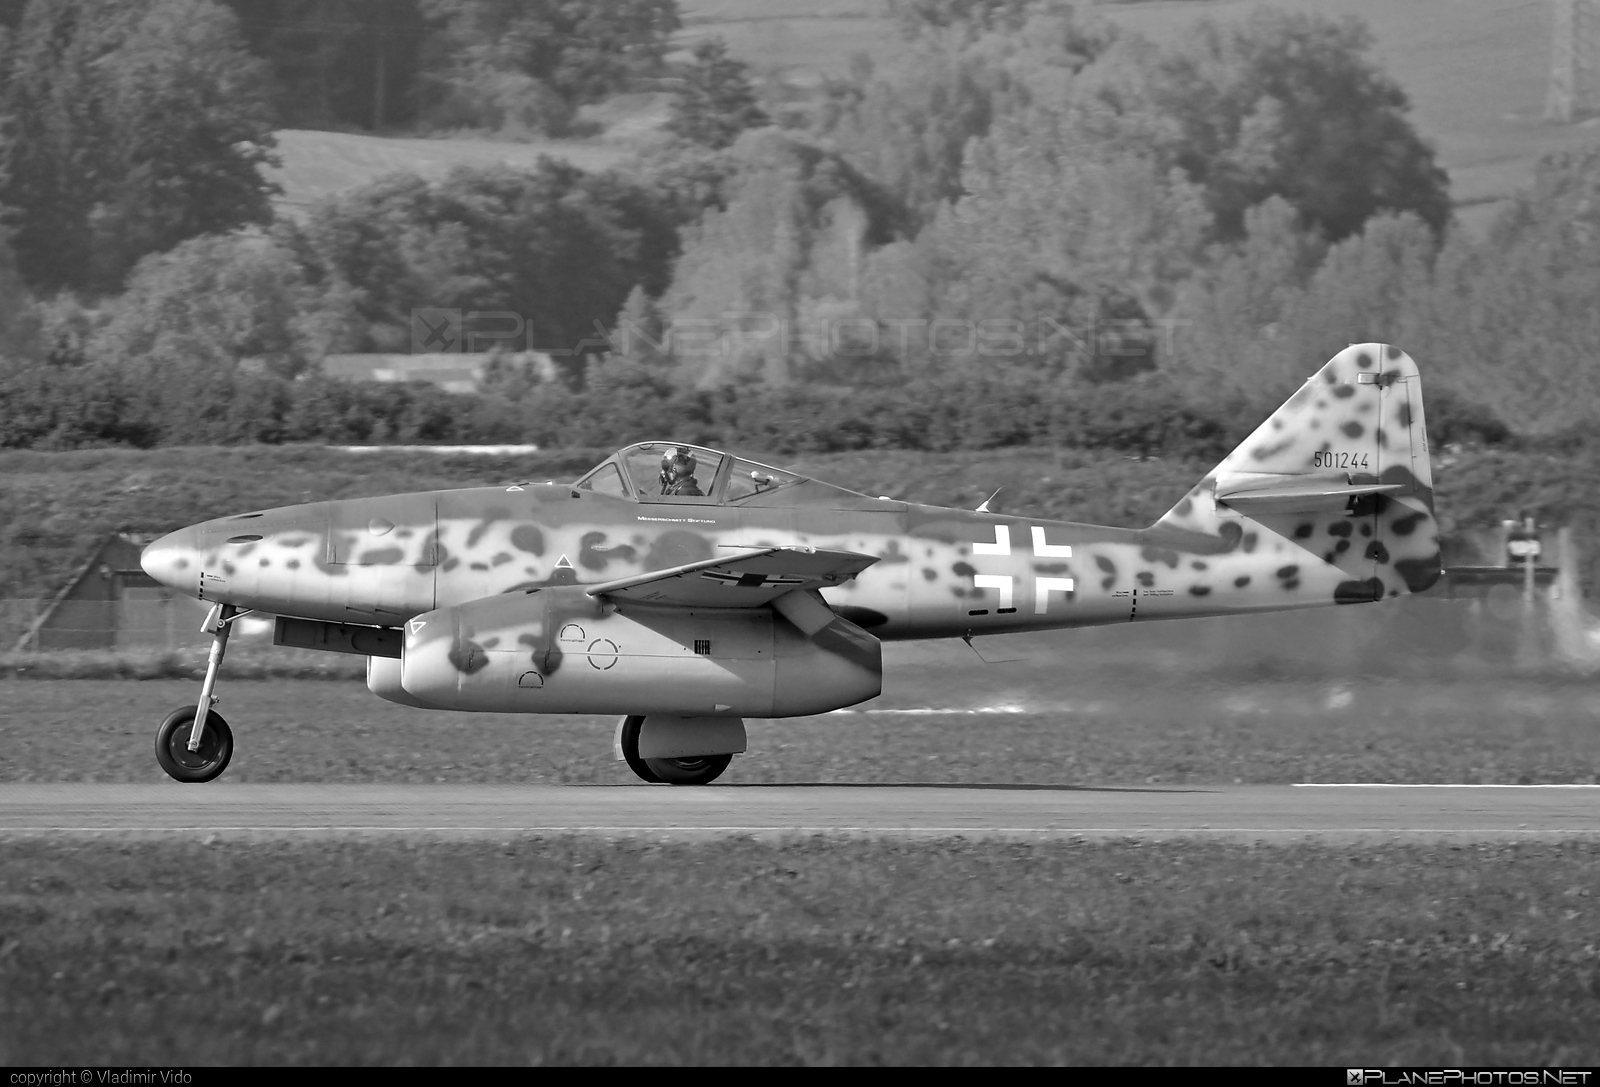 Messerschmitt Me 262A-1c Schwalbe - D-IMTT operated by Messerschmitt Foundation #airpower2016 #messerschmitt